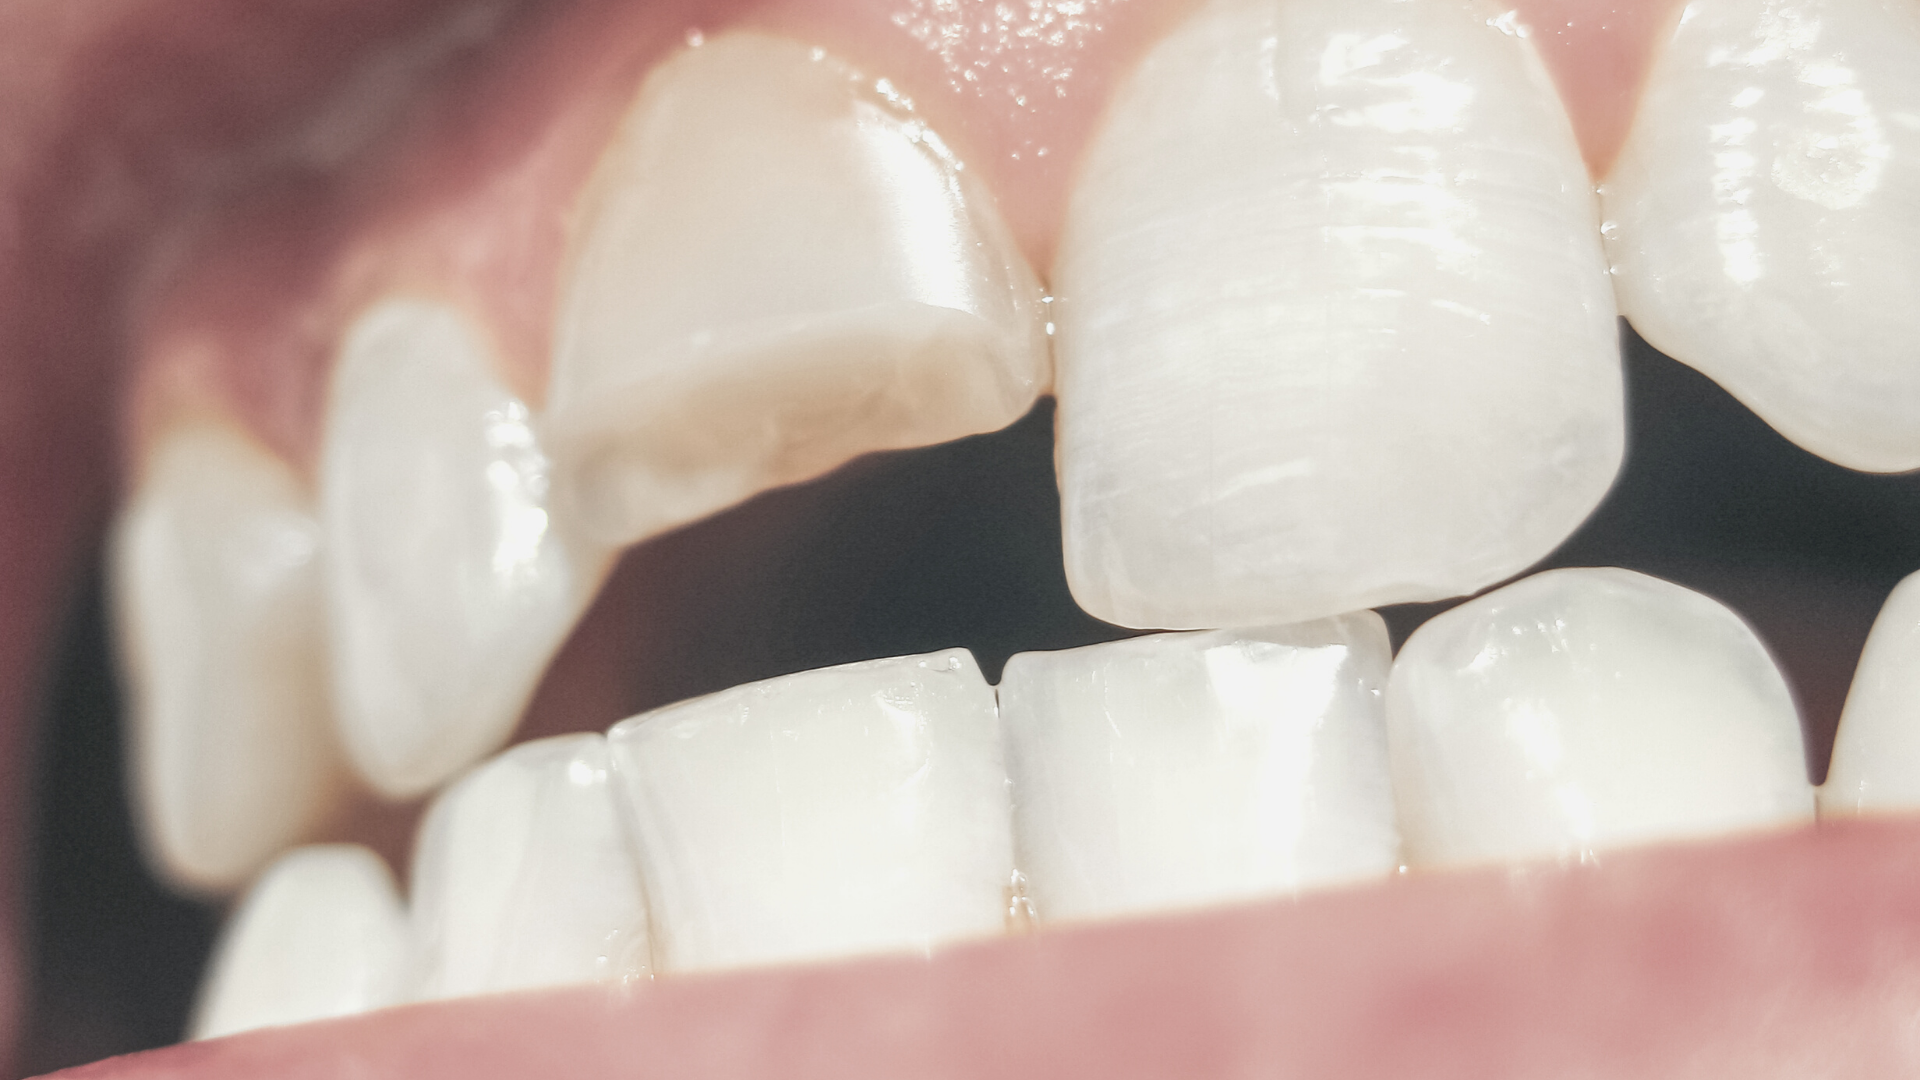 Fractura dental: qué es, tipos y cómo tratarla